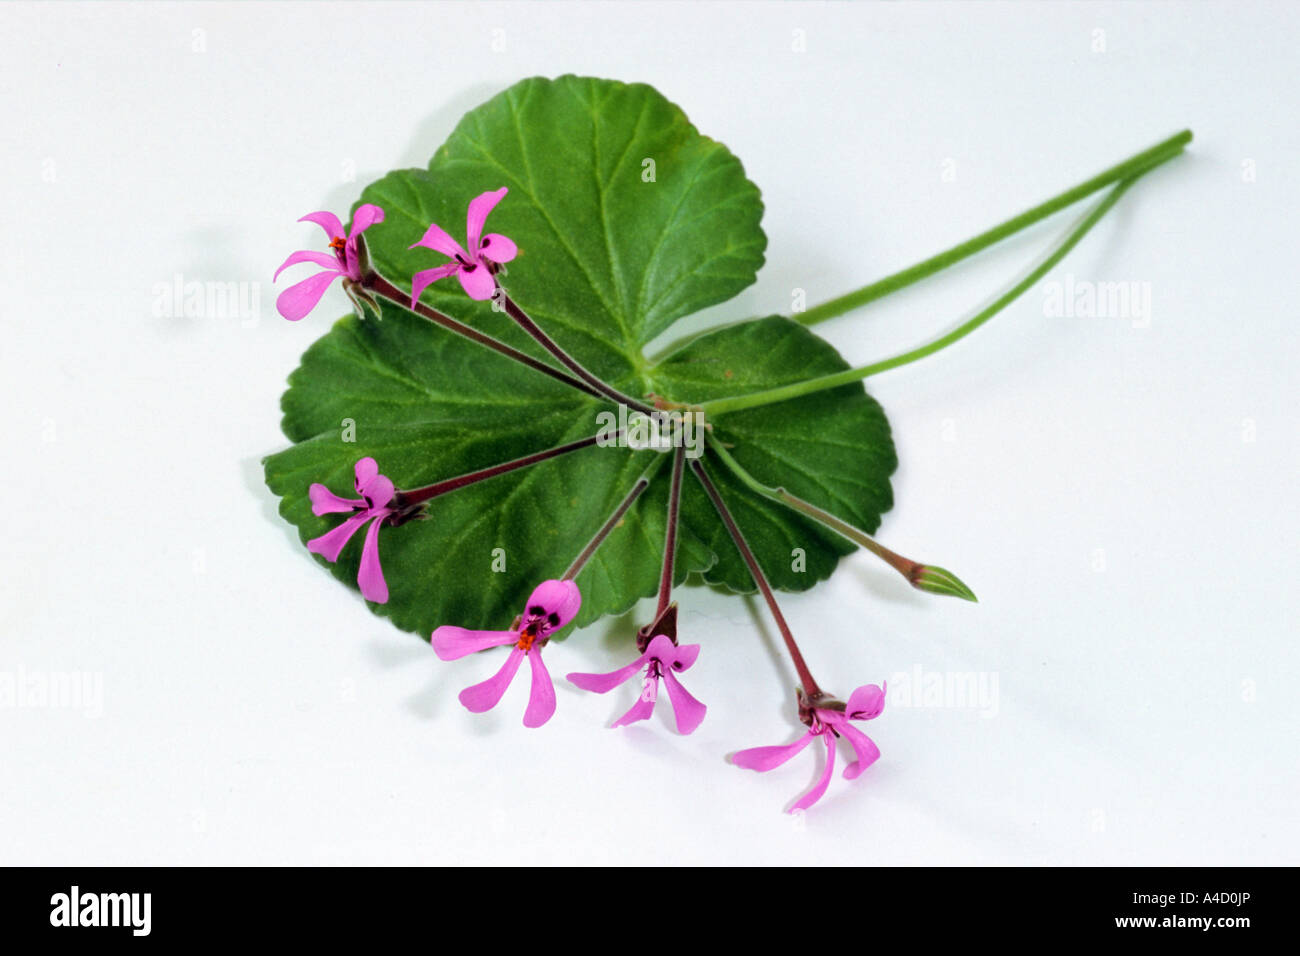 Umckaloabo (Pelargonium reniforme, Pelargonium sinoides), leaf and flowers, studio picture Stock Photo